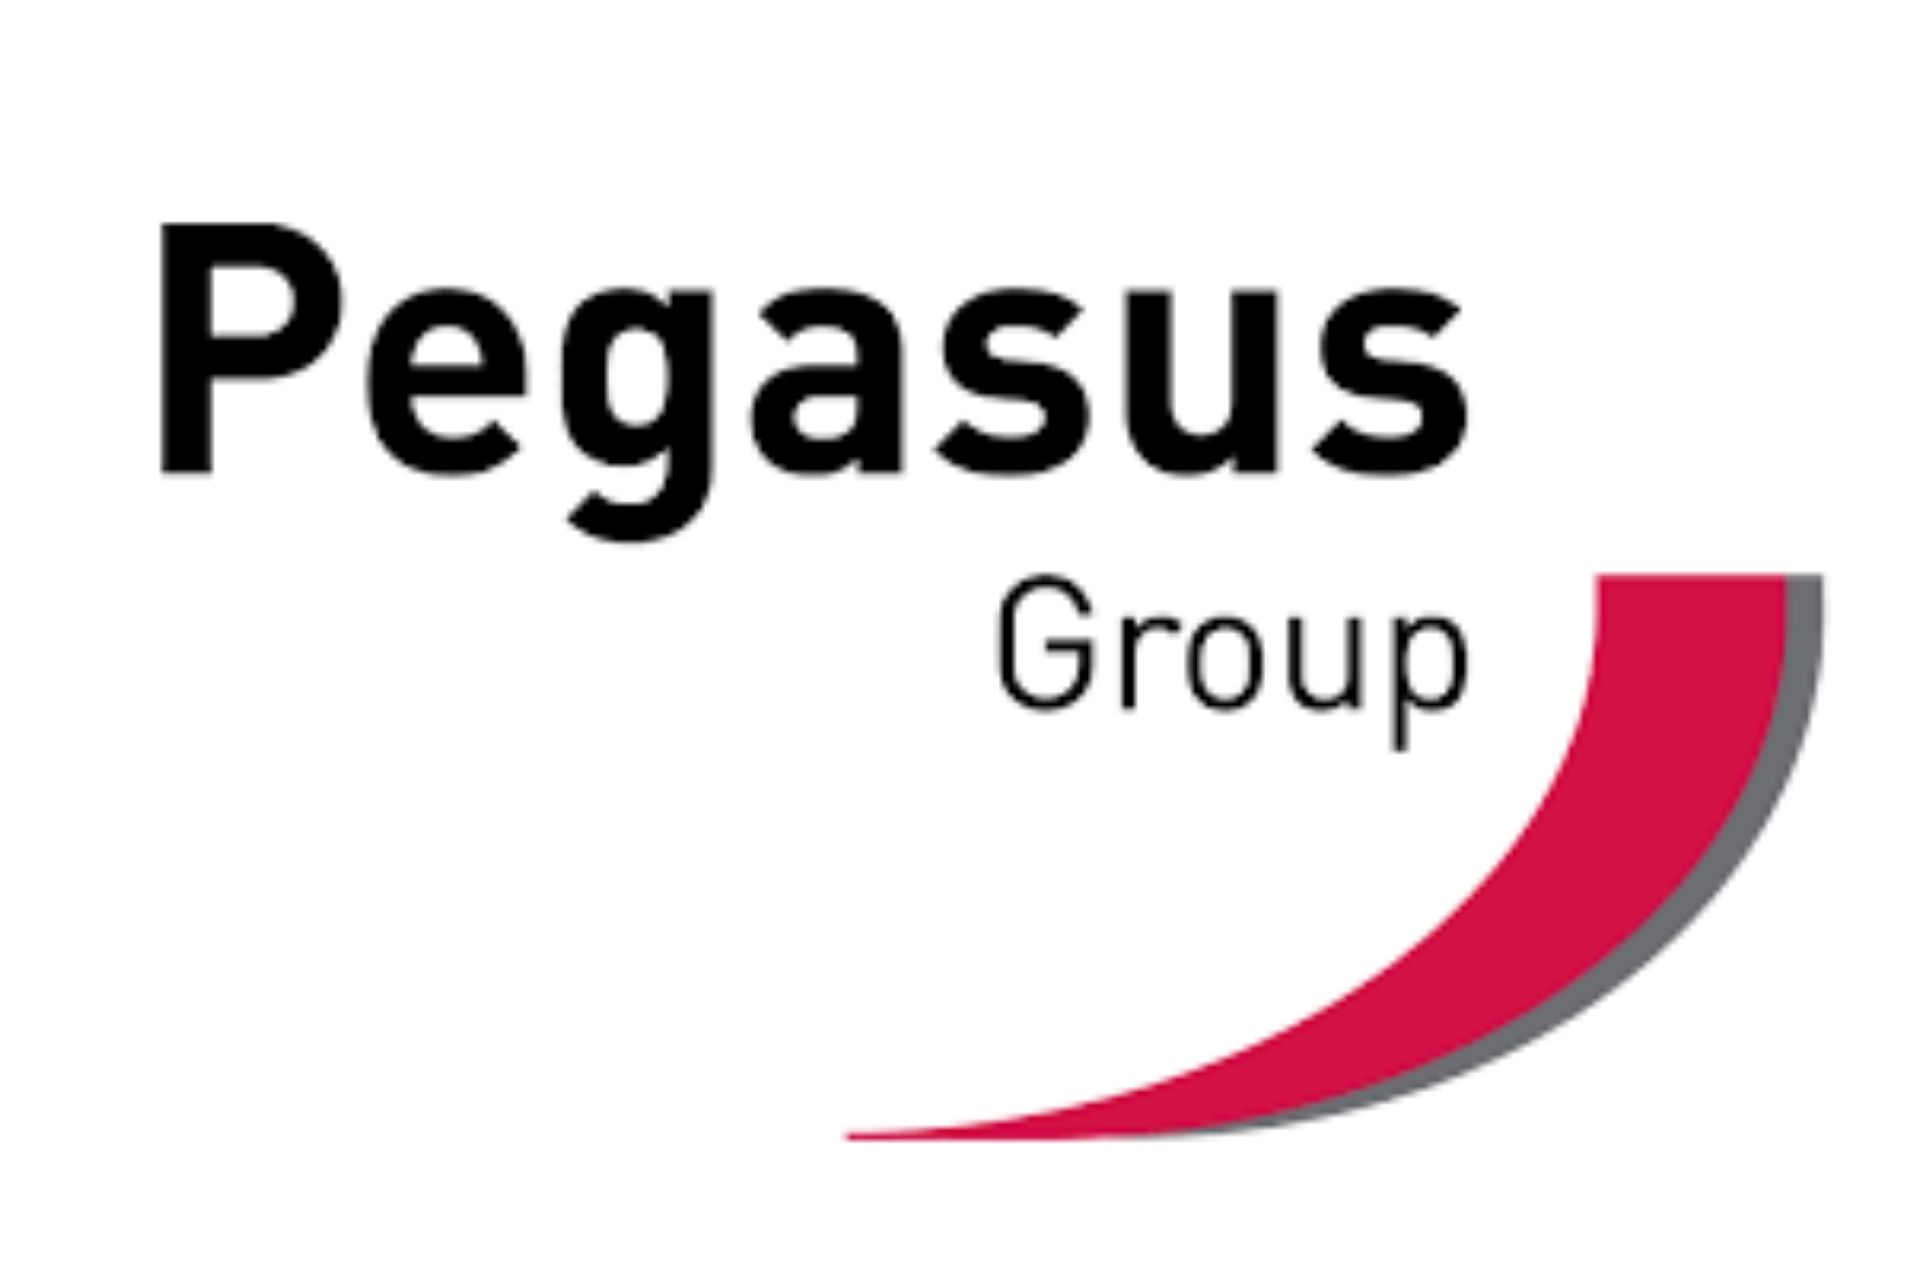 Pegasus group logo